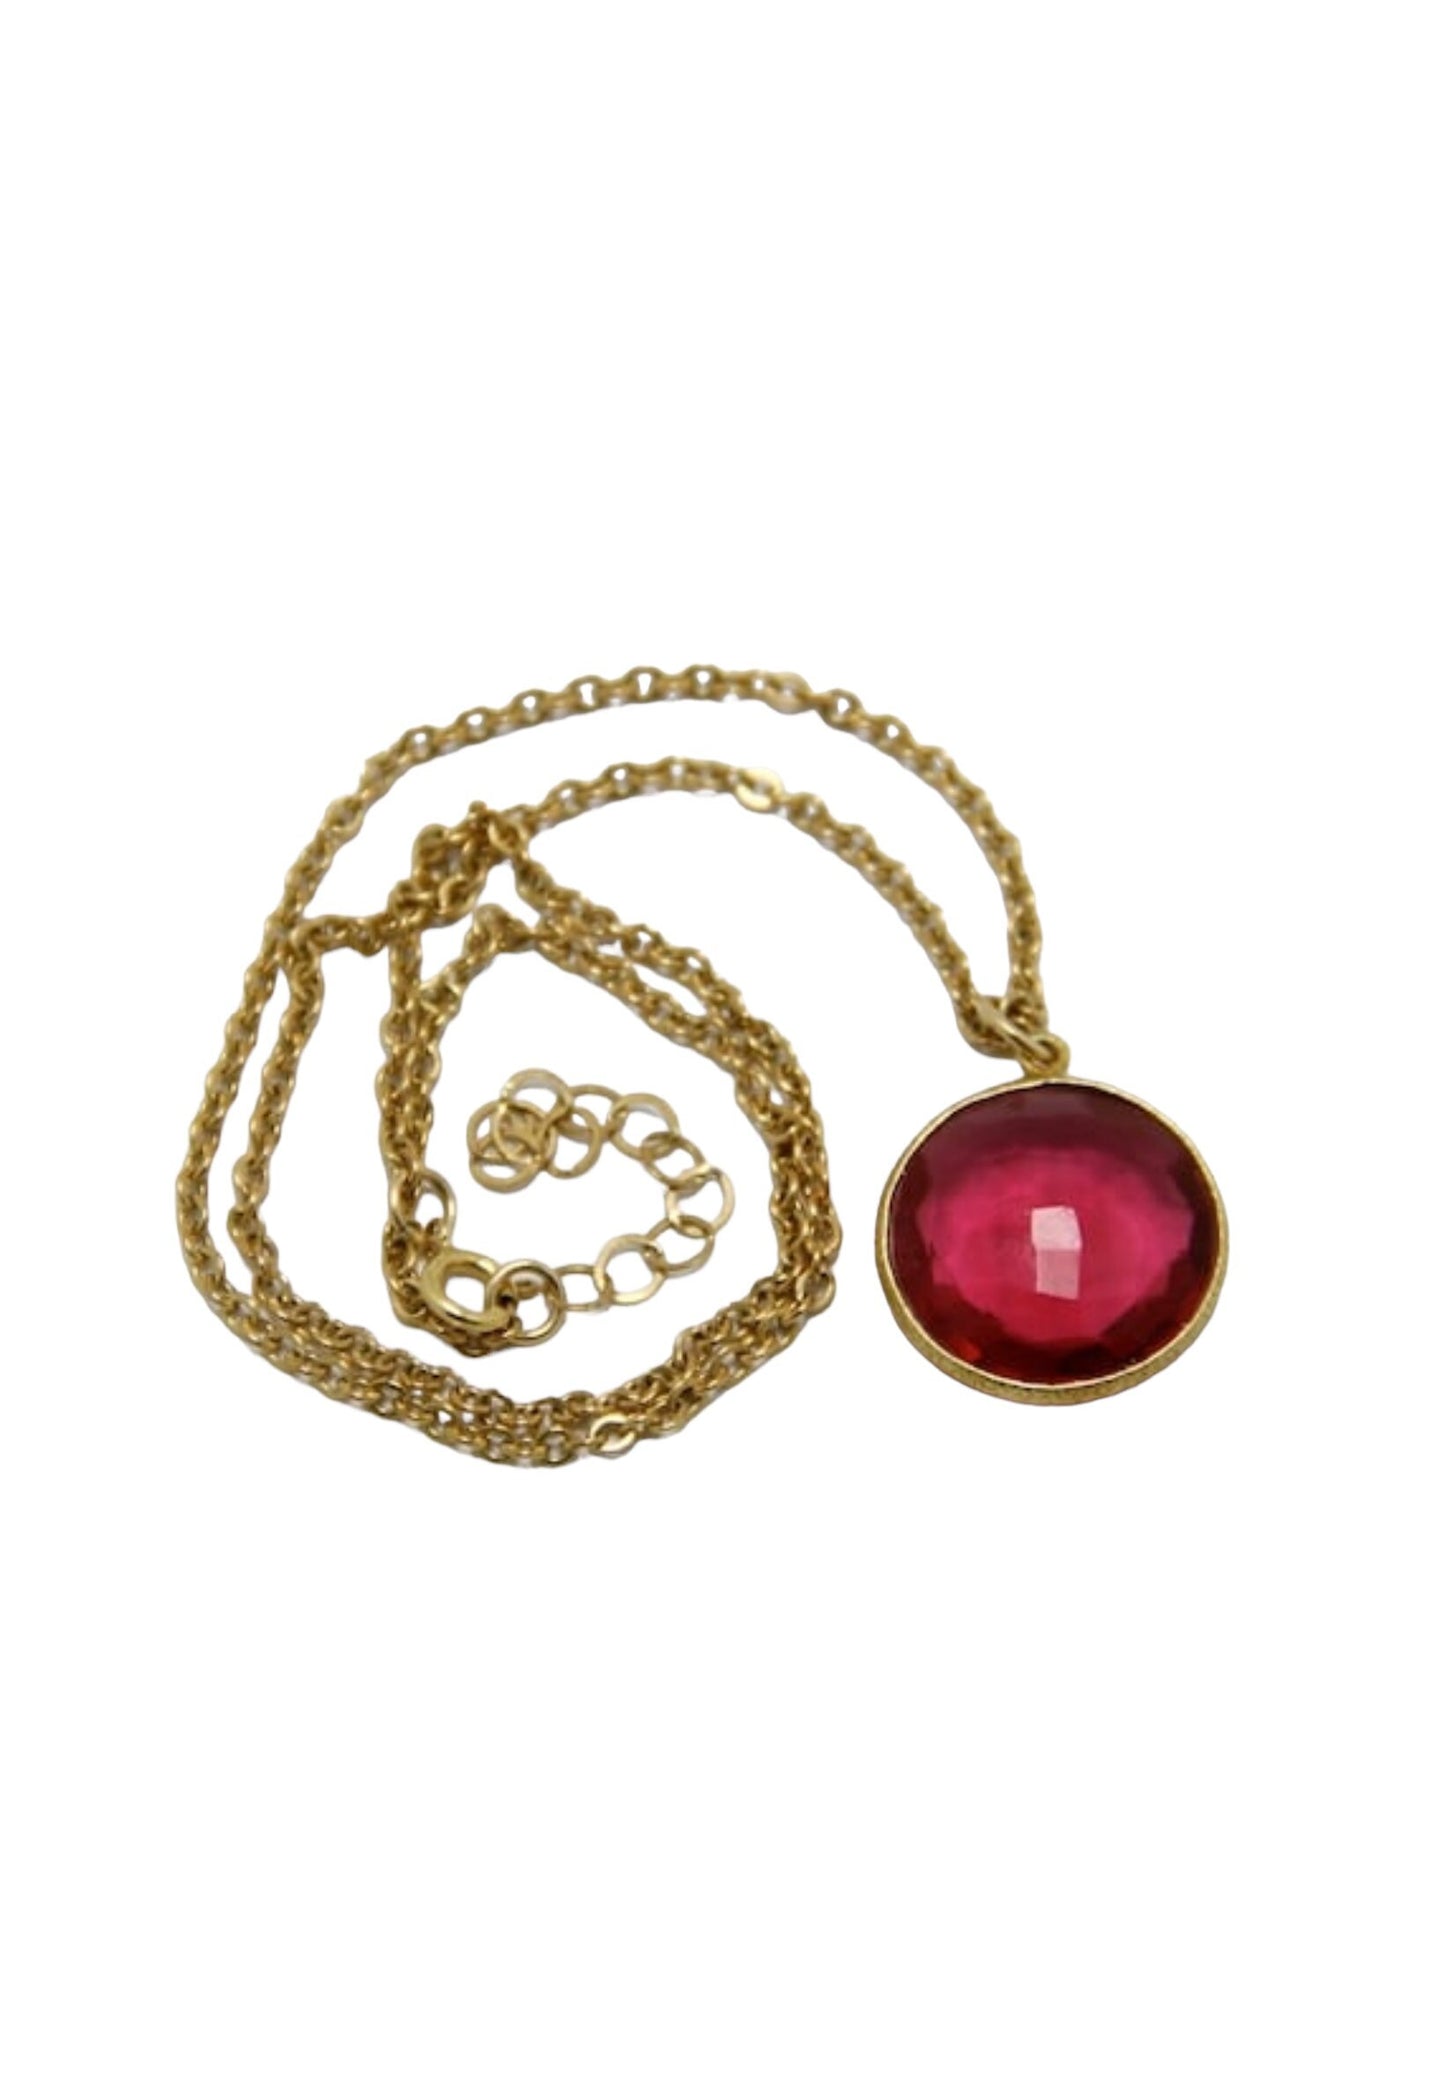 Red Quartz Necklace, Red Gold necklace, Red Quartz pendant, bezel gemstone pendant, friendship necklace